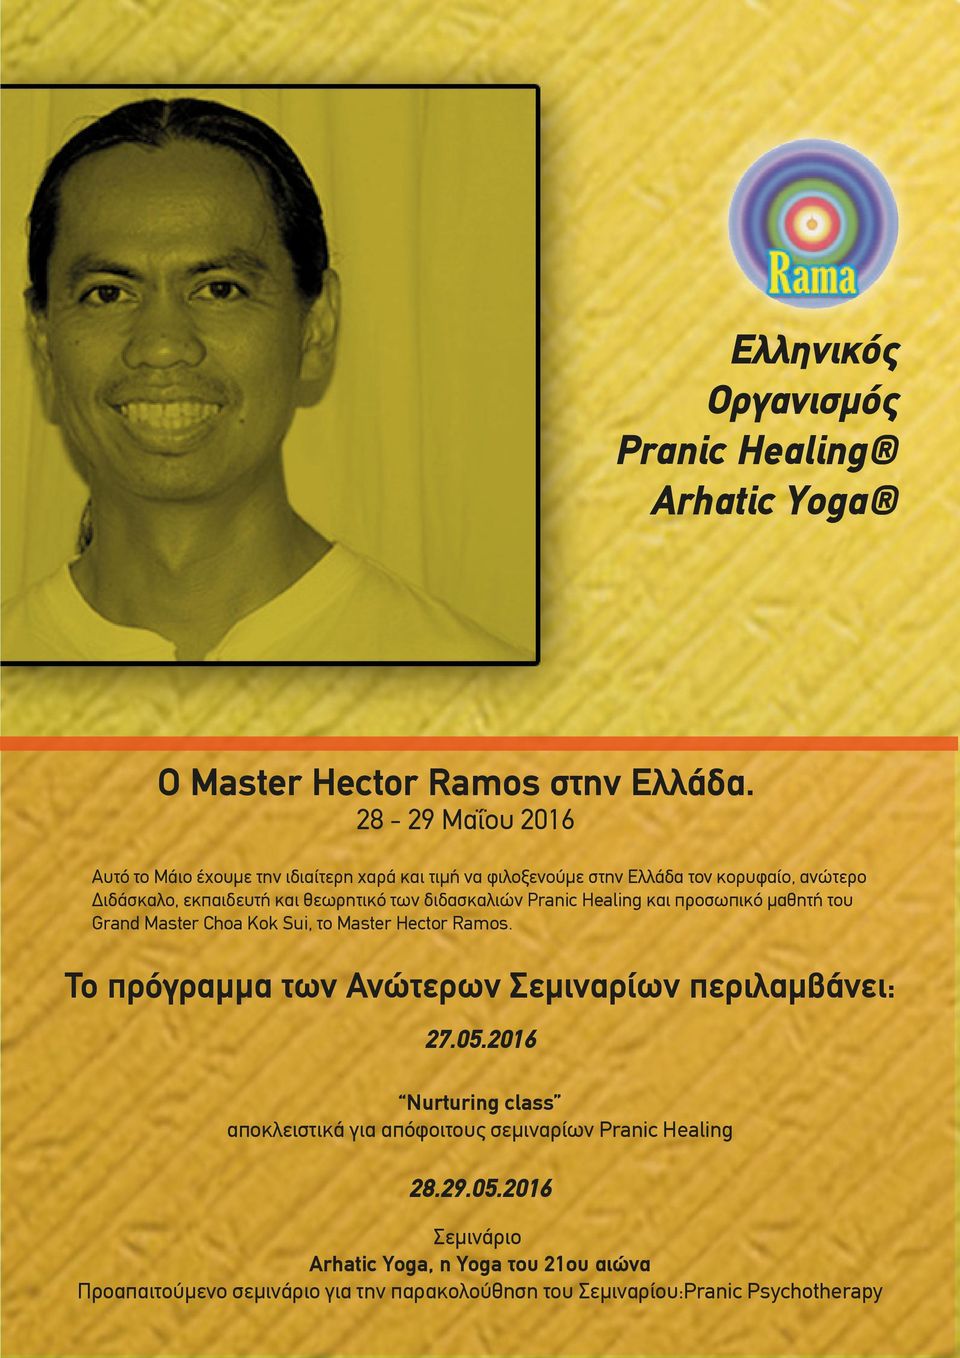 διδασκαλιών Pranic Healing και προσωπικό µαθητή του Grand Master Choa Kok Sui, το Master Hector Ramos.